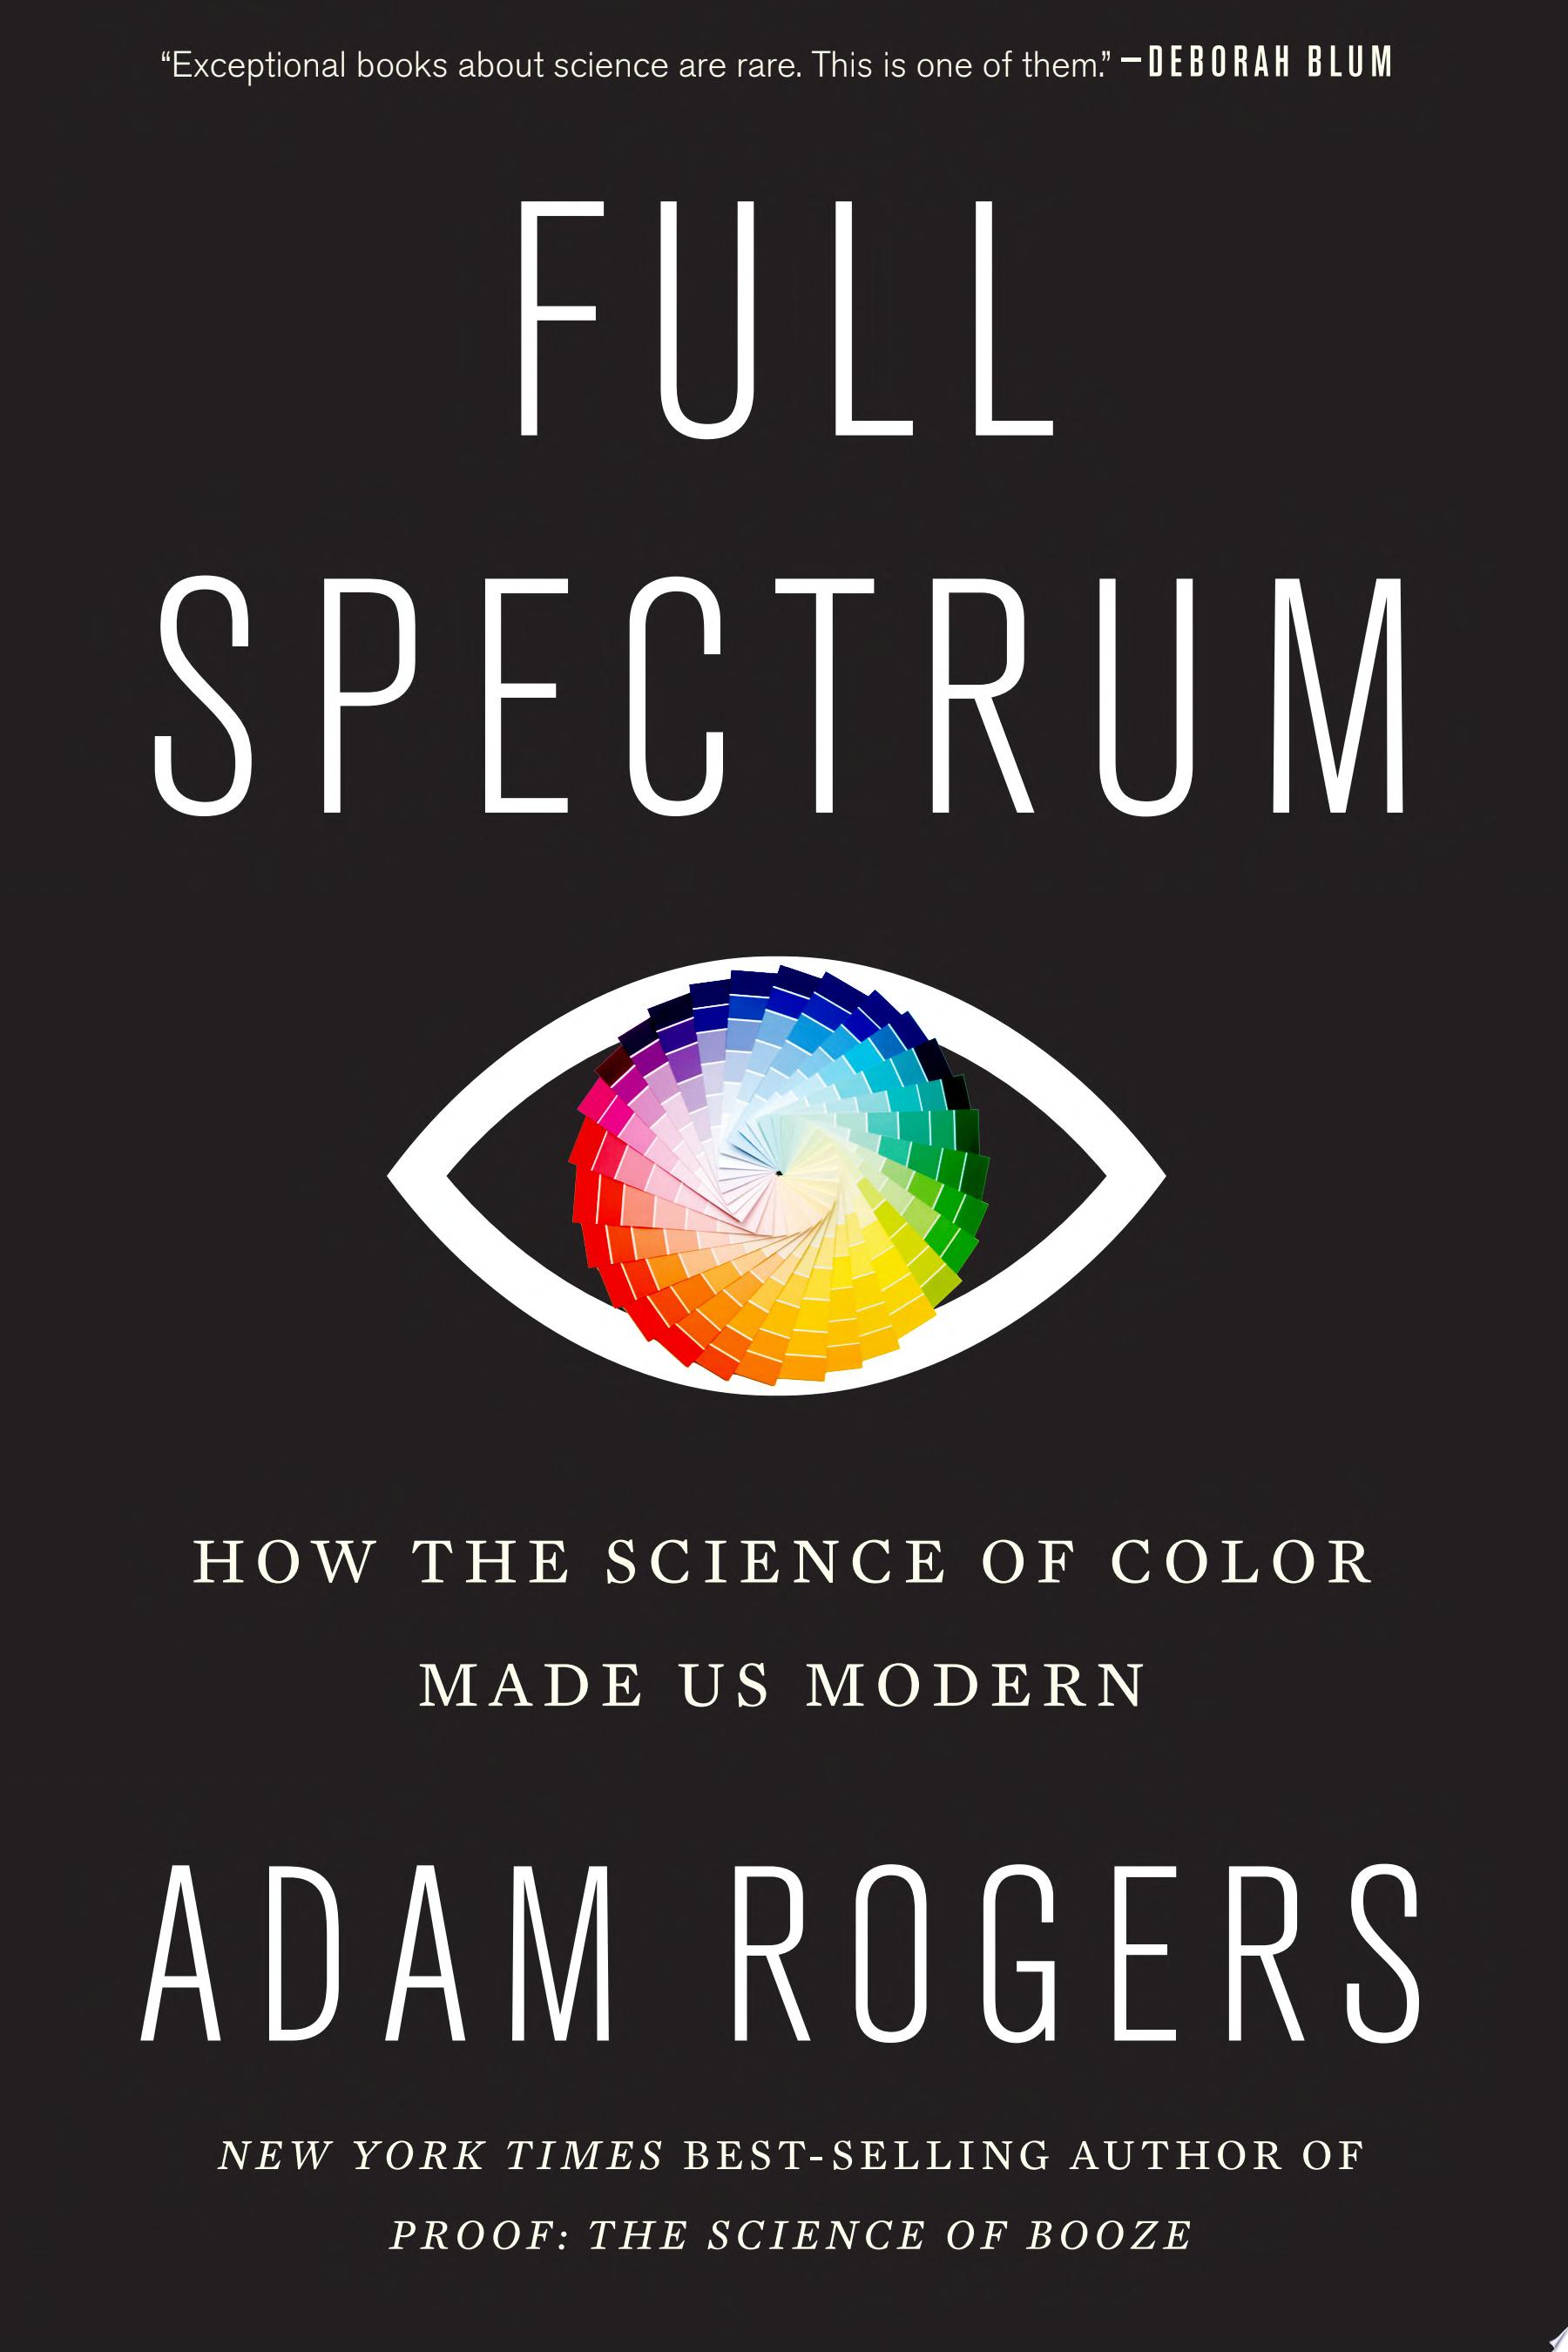 Image for "Full Spectrum"